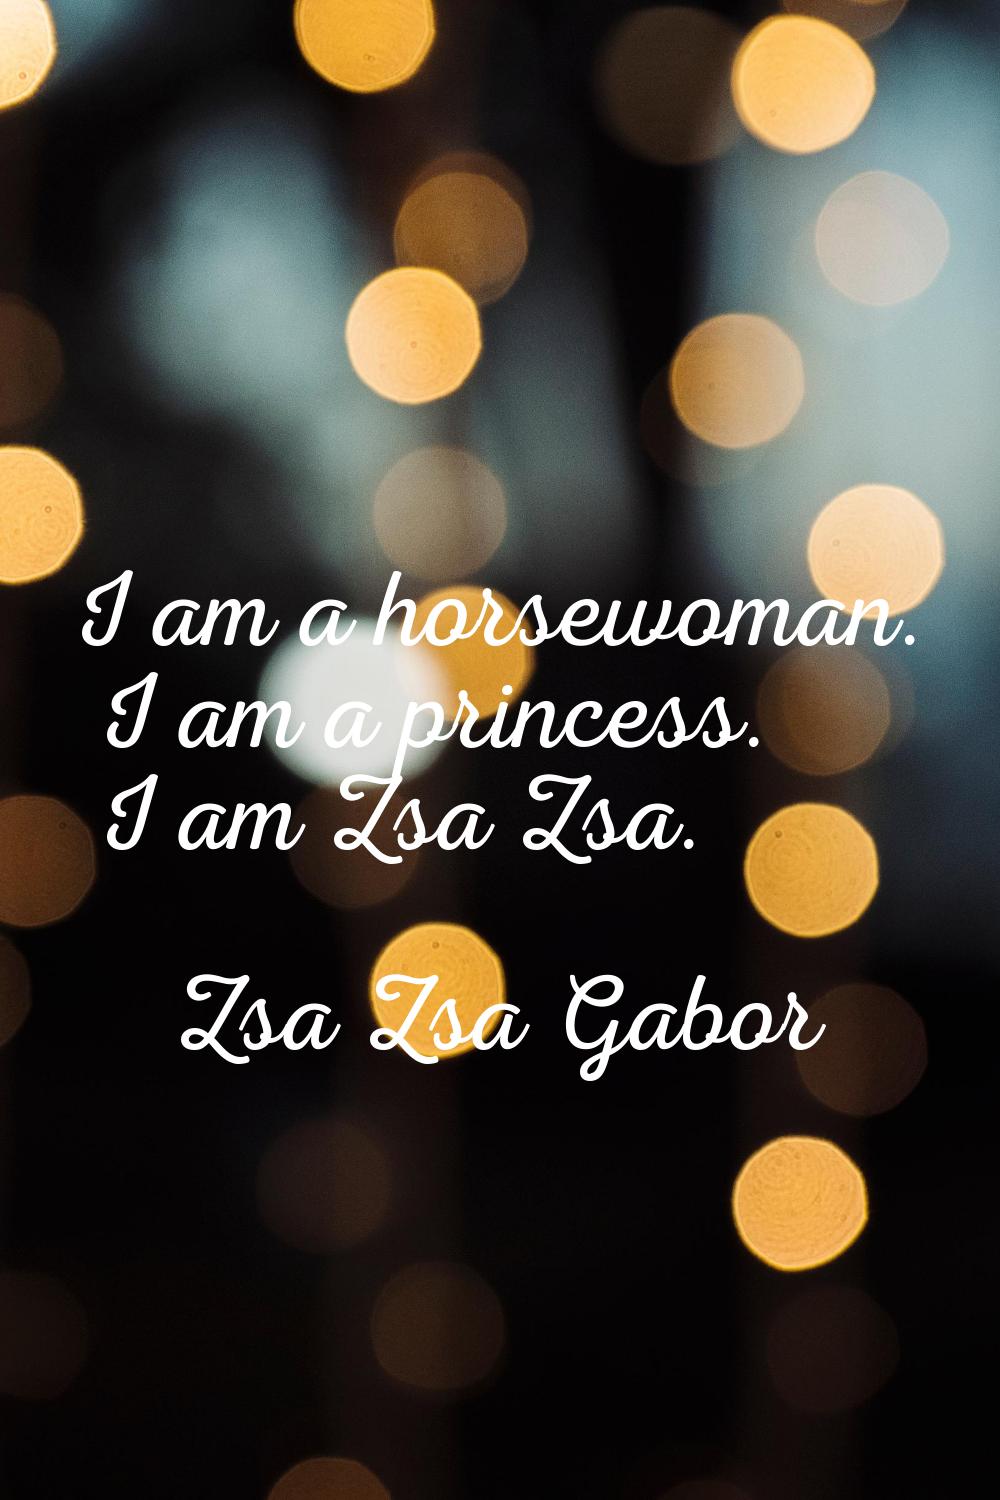 I am a horsewoman. I am a princess. I am Zsa Zsa.